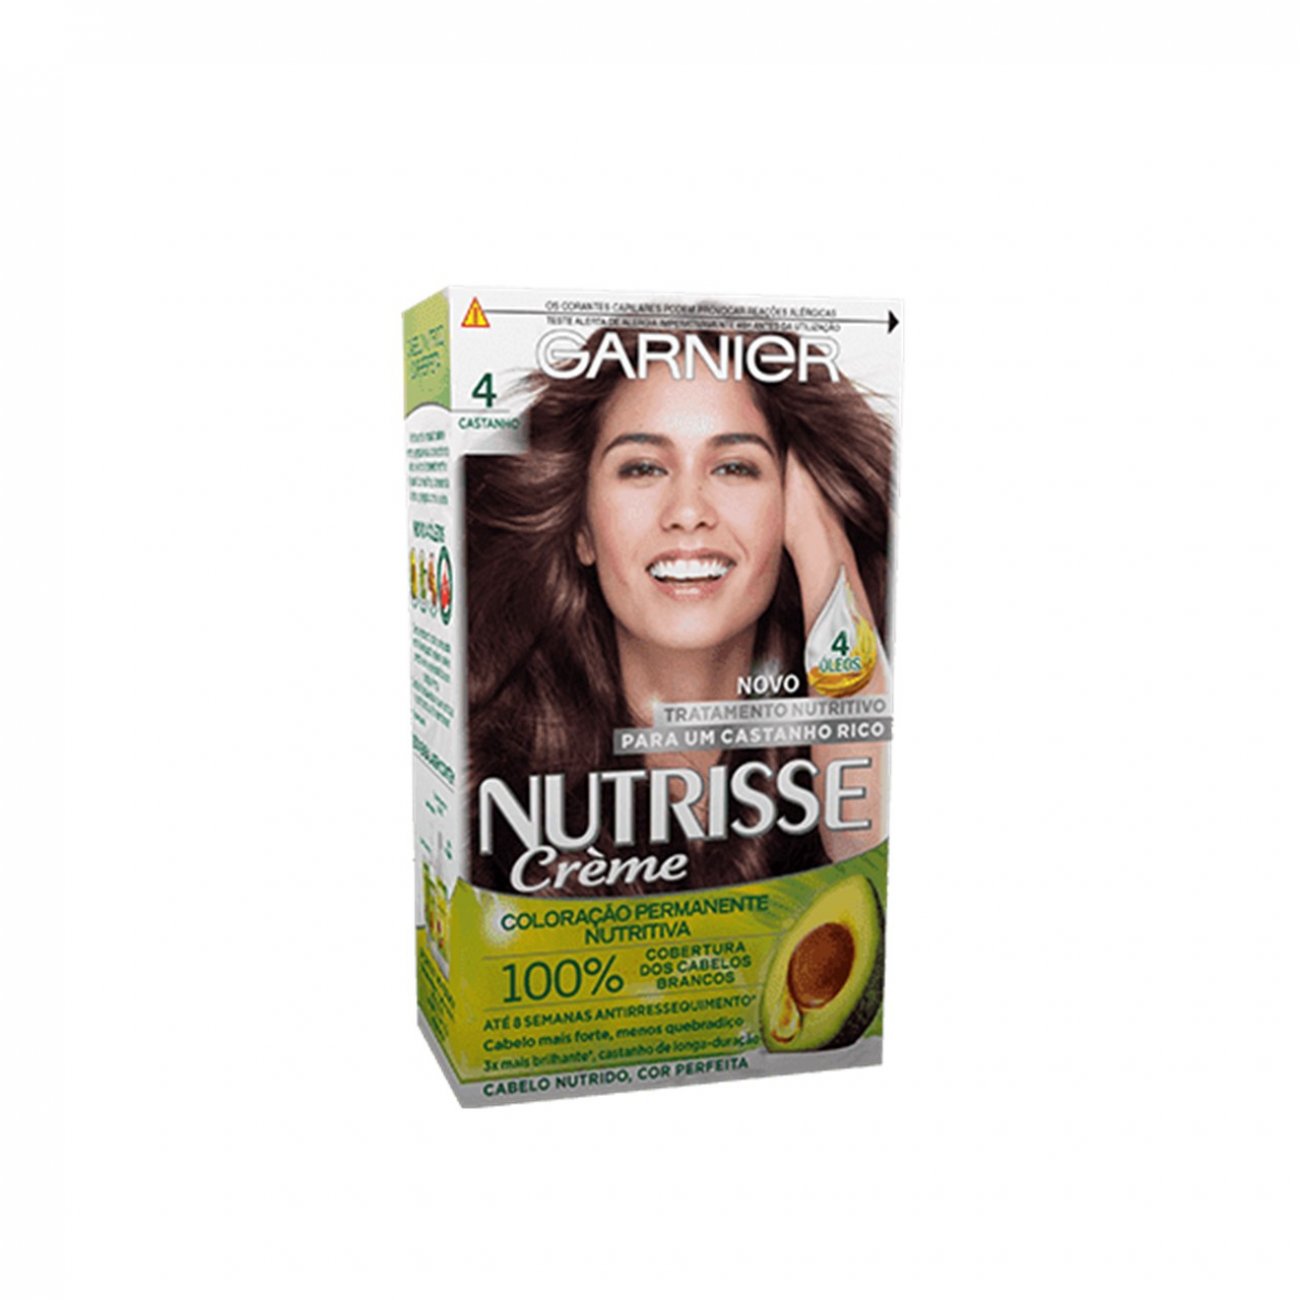 Buy Garnier Nutrisse Crème 4 Dark Brown Permanent Hair Dye · Panama